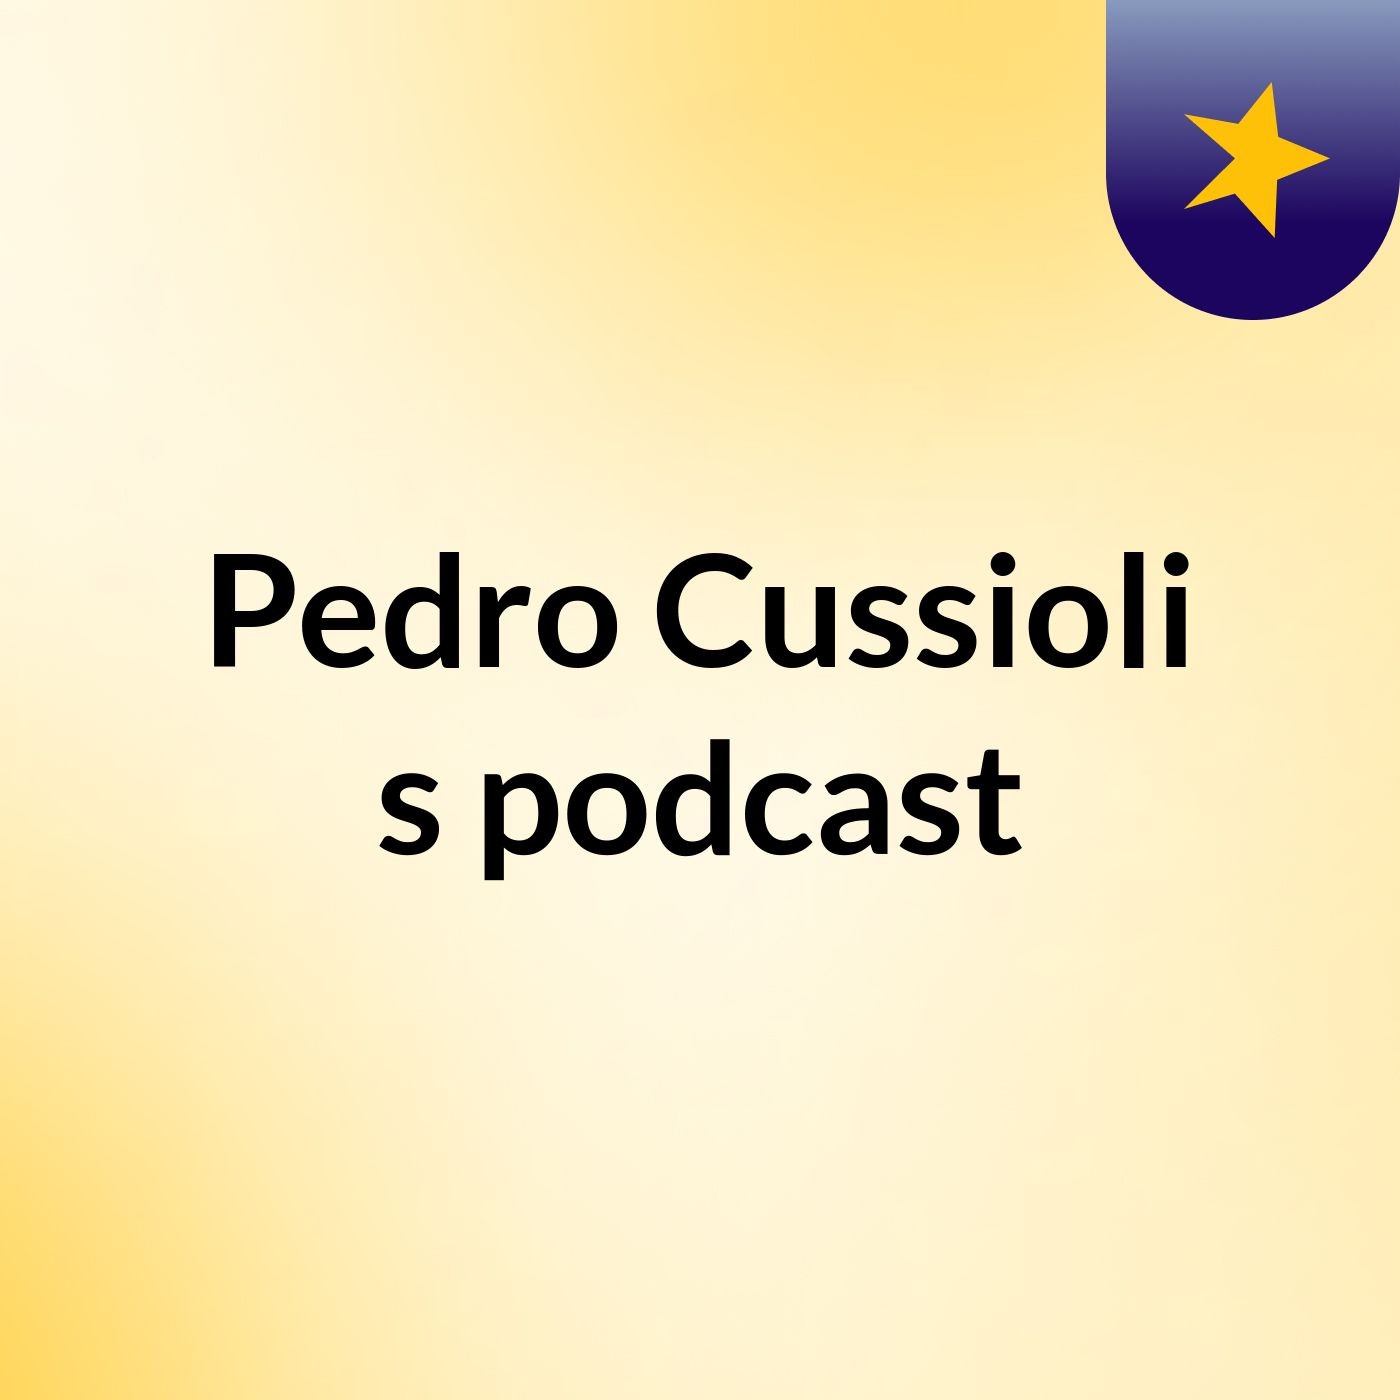 Pedro Cussioli's podcast